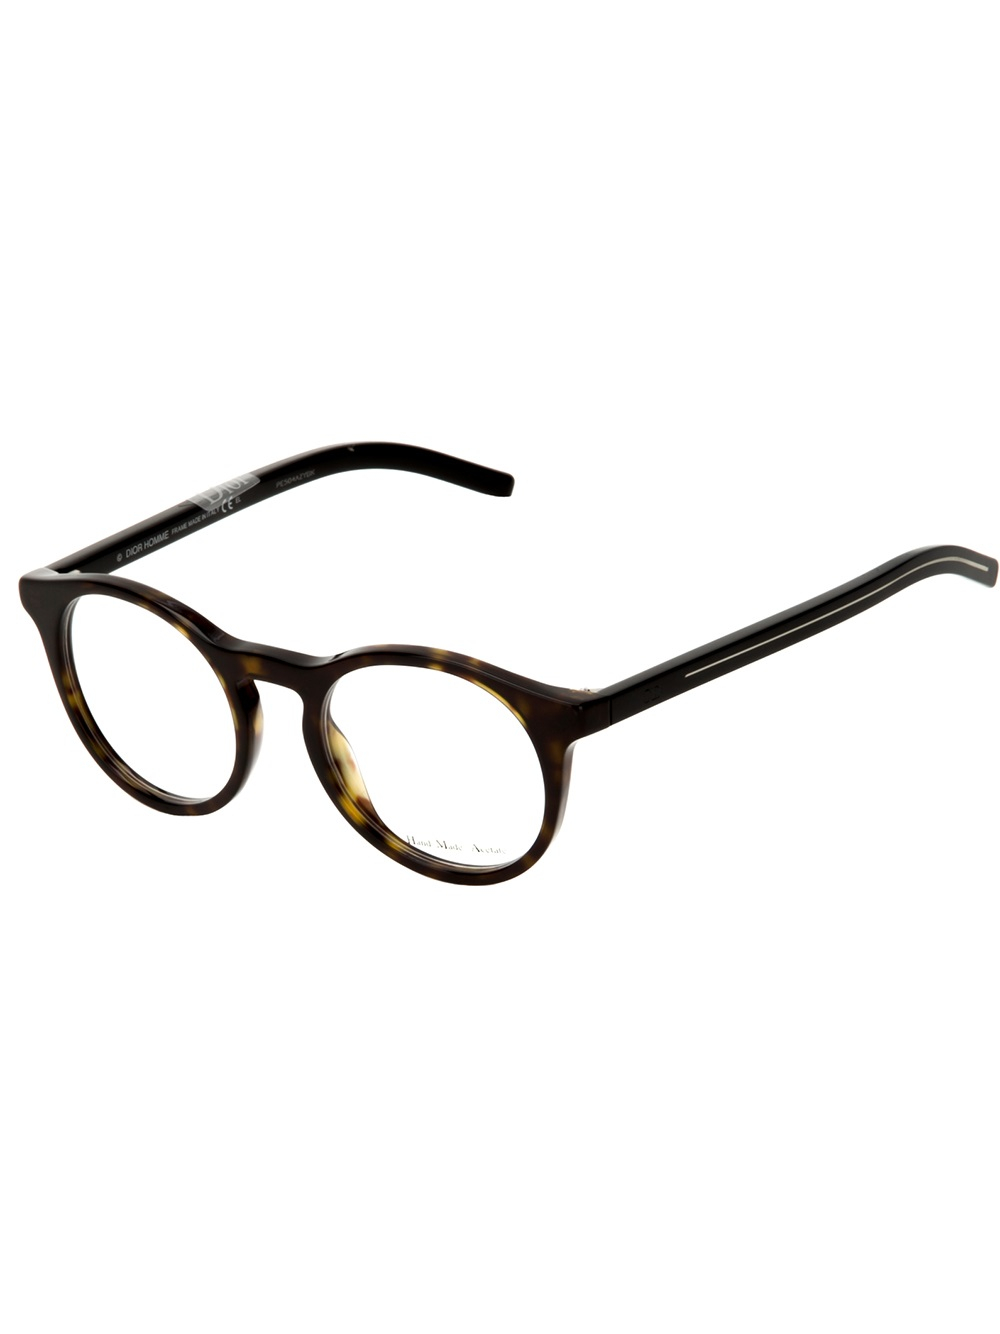 Eyebobs Glasses Neverboring Reading Glasses